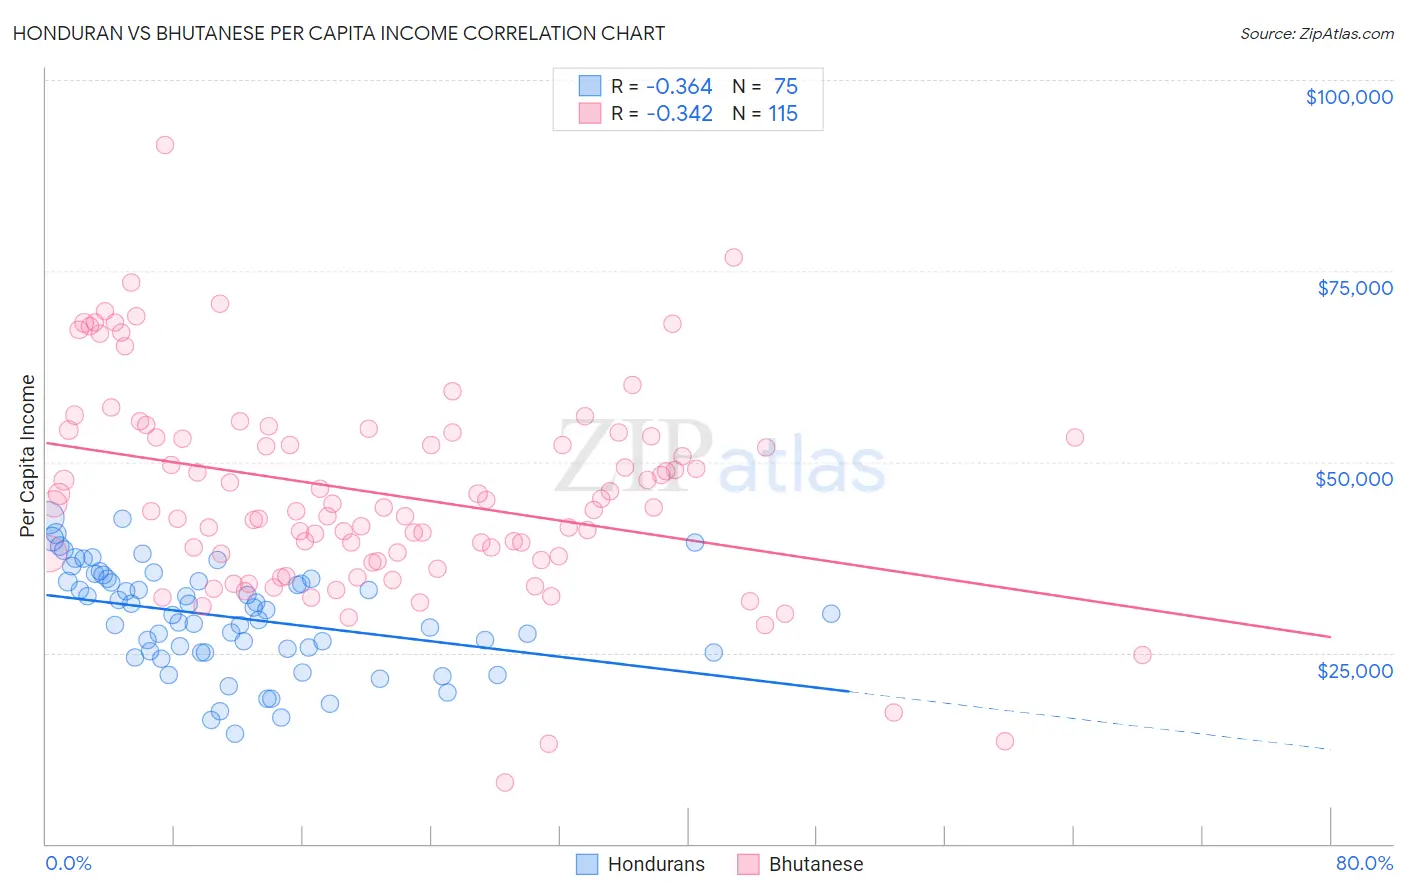 Honduran vs Bhutanese Per Capita Income